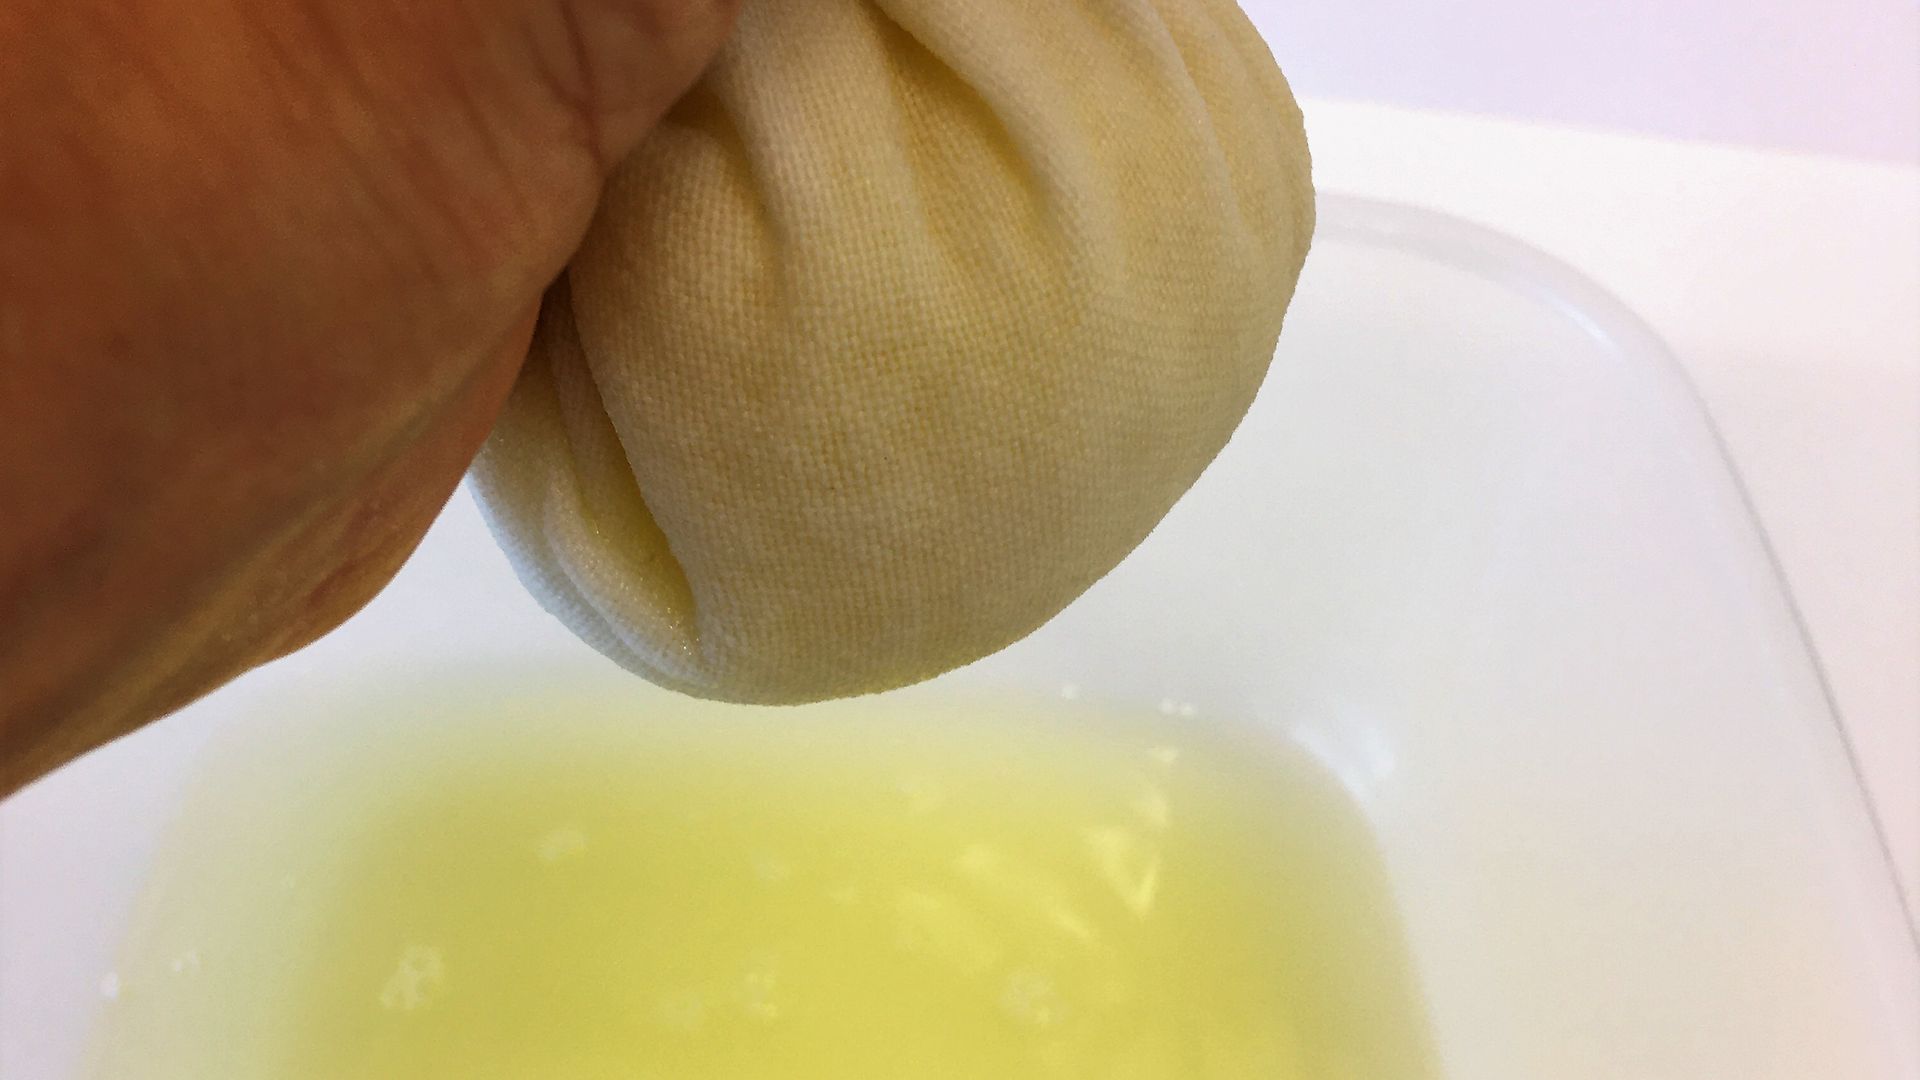 ręczne wyciskanie żółtego soku z białej kulki ręcznika herbacianego